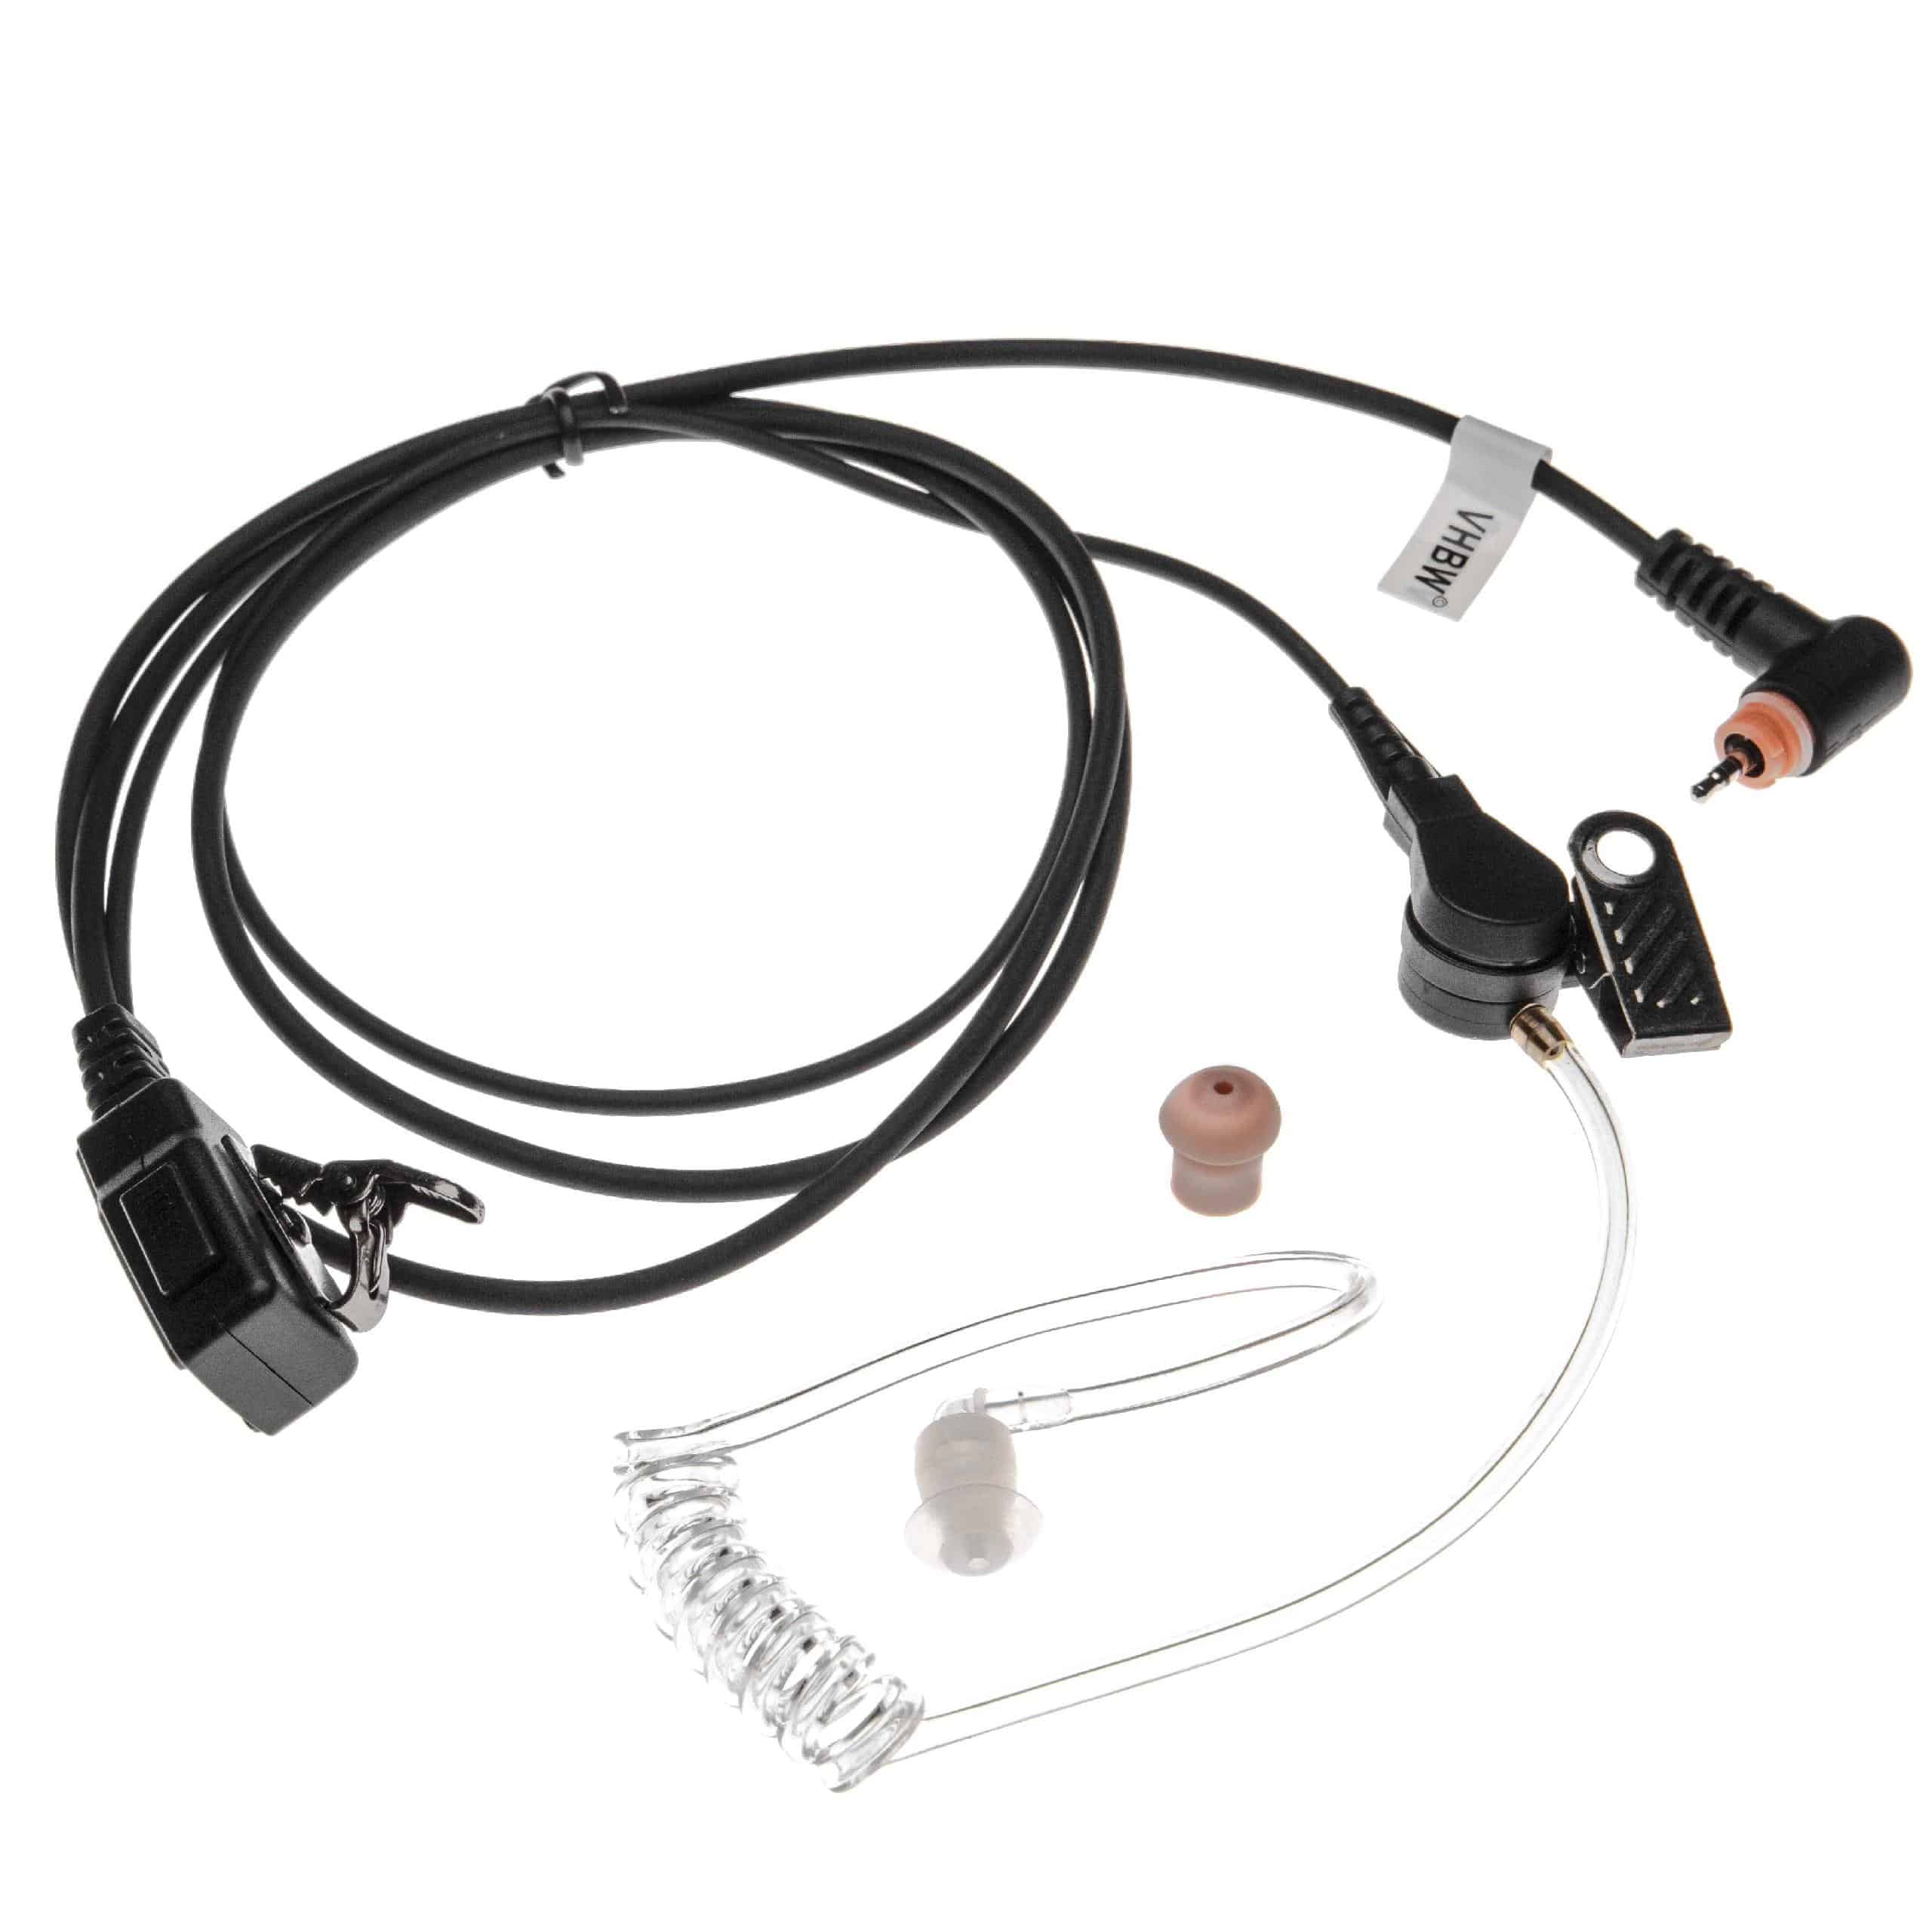 Oreillette de talkie-walkie pour Motorola SL7550 et autres - Avec touche de réponse + support clip, noir